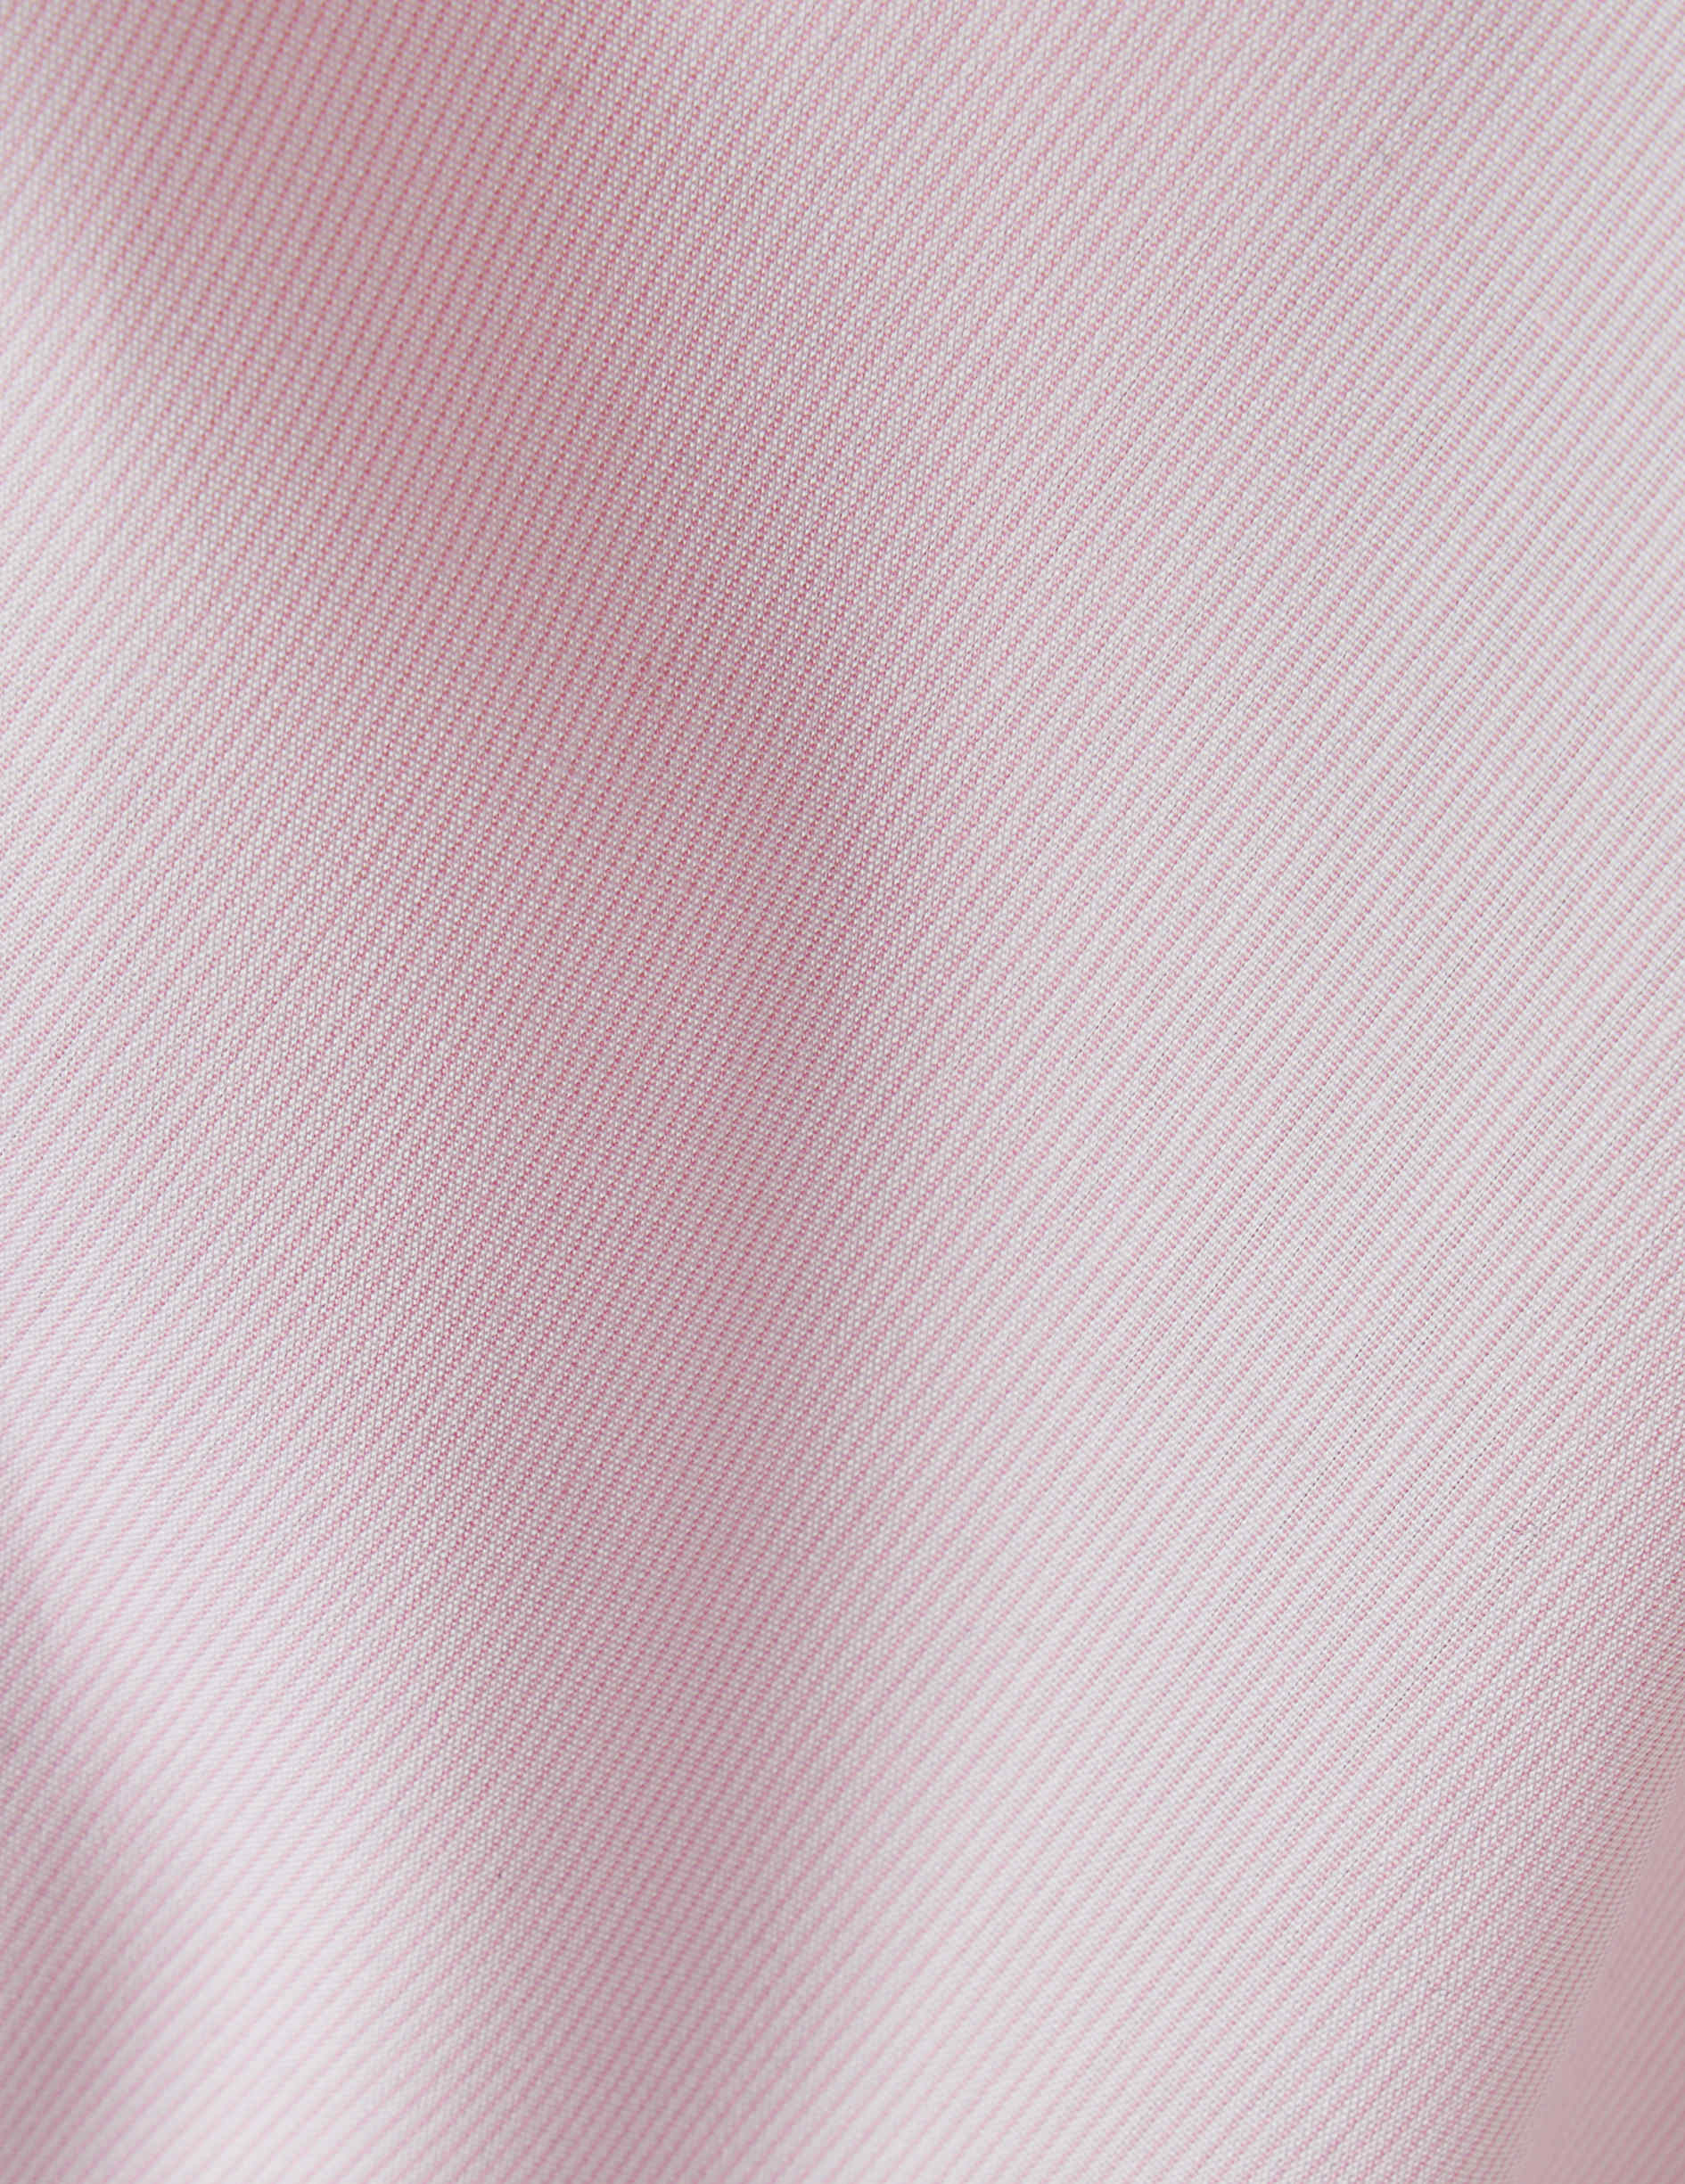 Chemise semi-ajustée rayée rose - Popeline - Col Italien